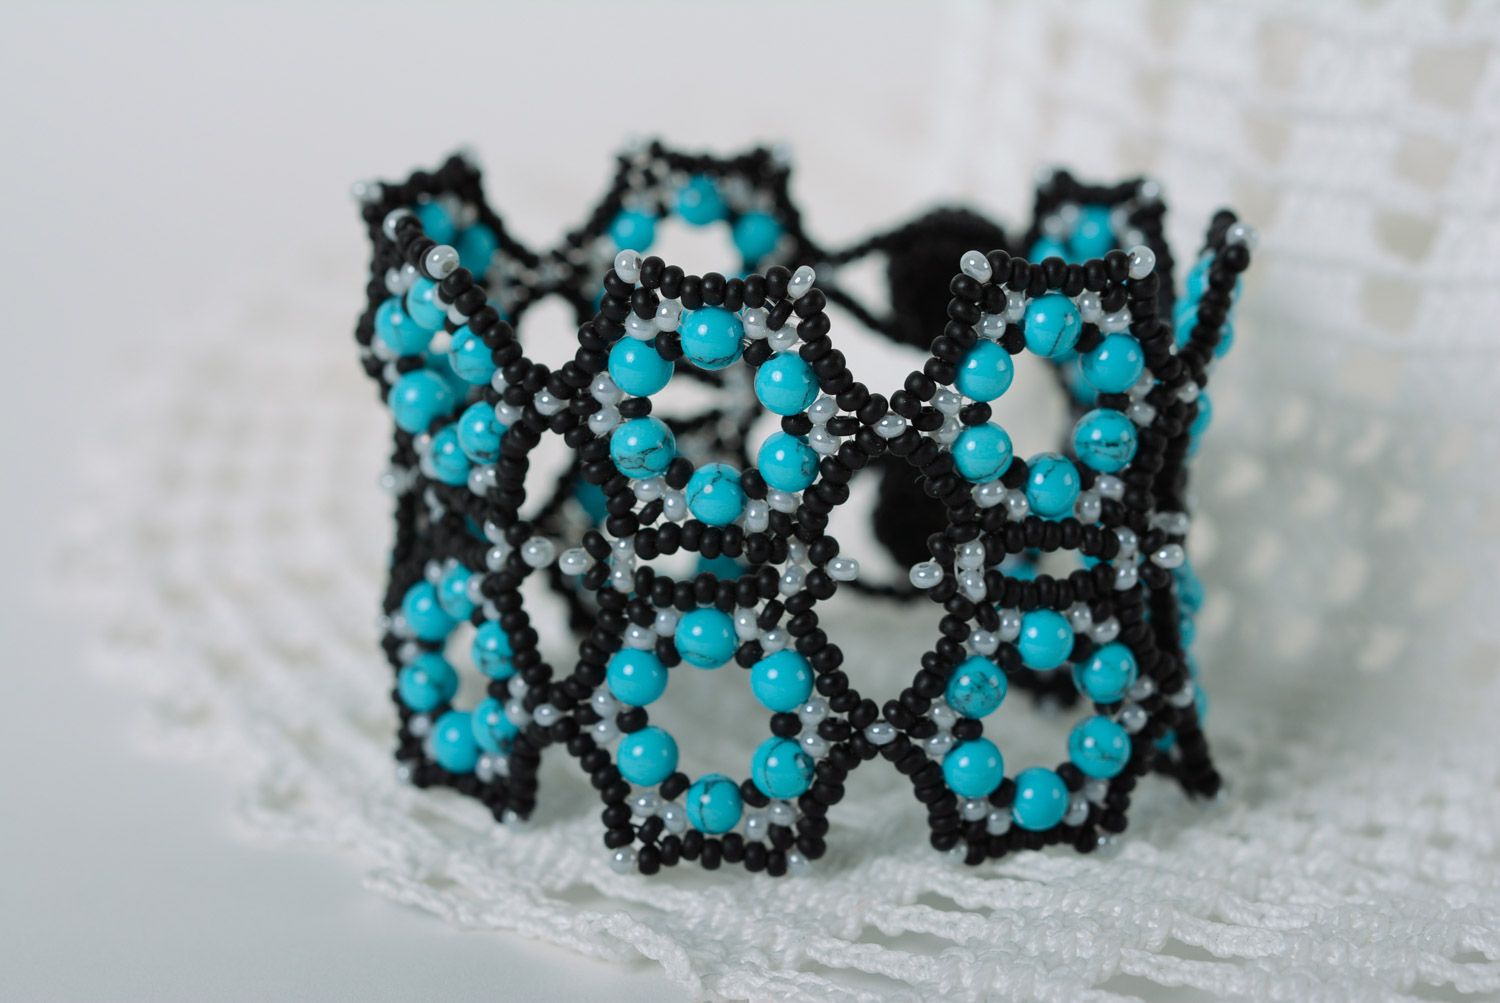 Black and blue handmade designer wrist bracelet woven of beads for women photo 1